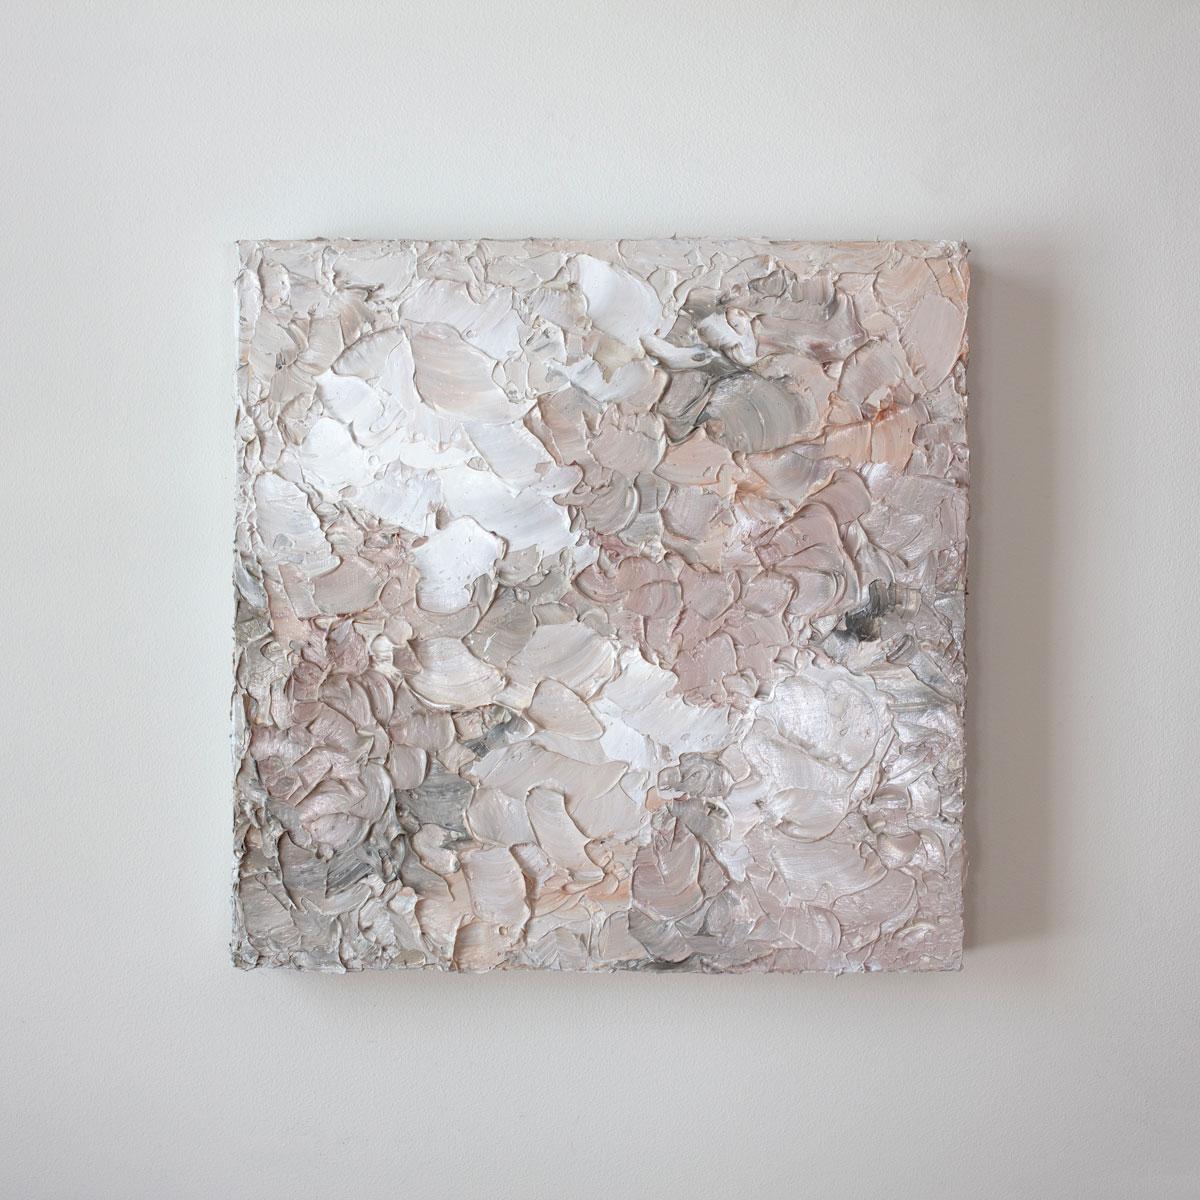 Cette paire de peintures abstraites texturées de Teodora Guererra présente une palette neutre et chaleureuse avec des tons variés de blush et de corail atténués, de blanc et de gris chaud. L'artiste utilise un couteau à palette pour appliquer